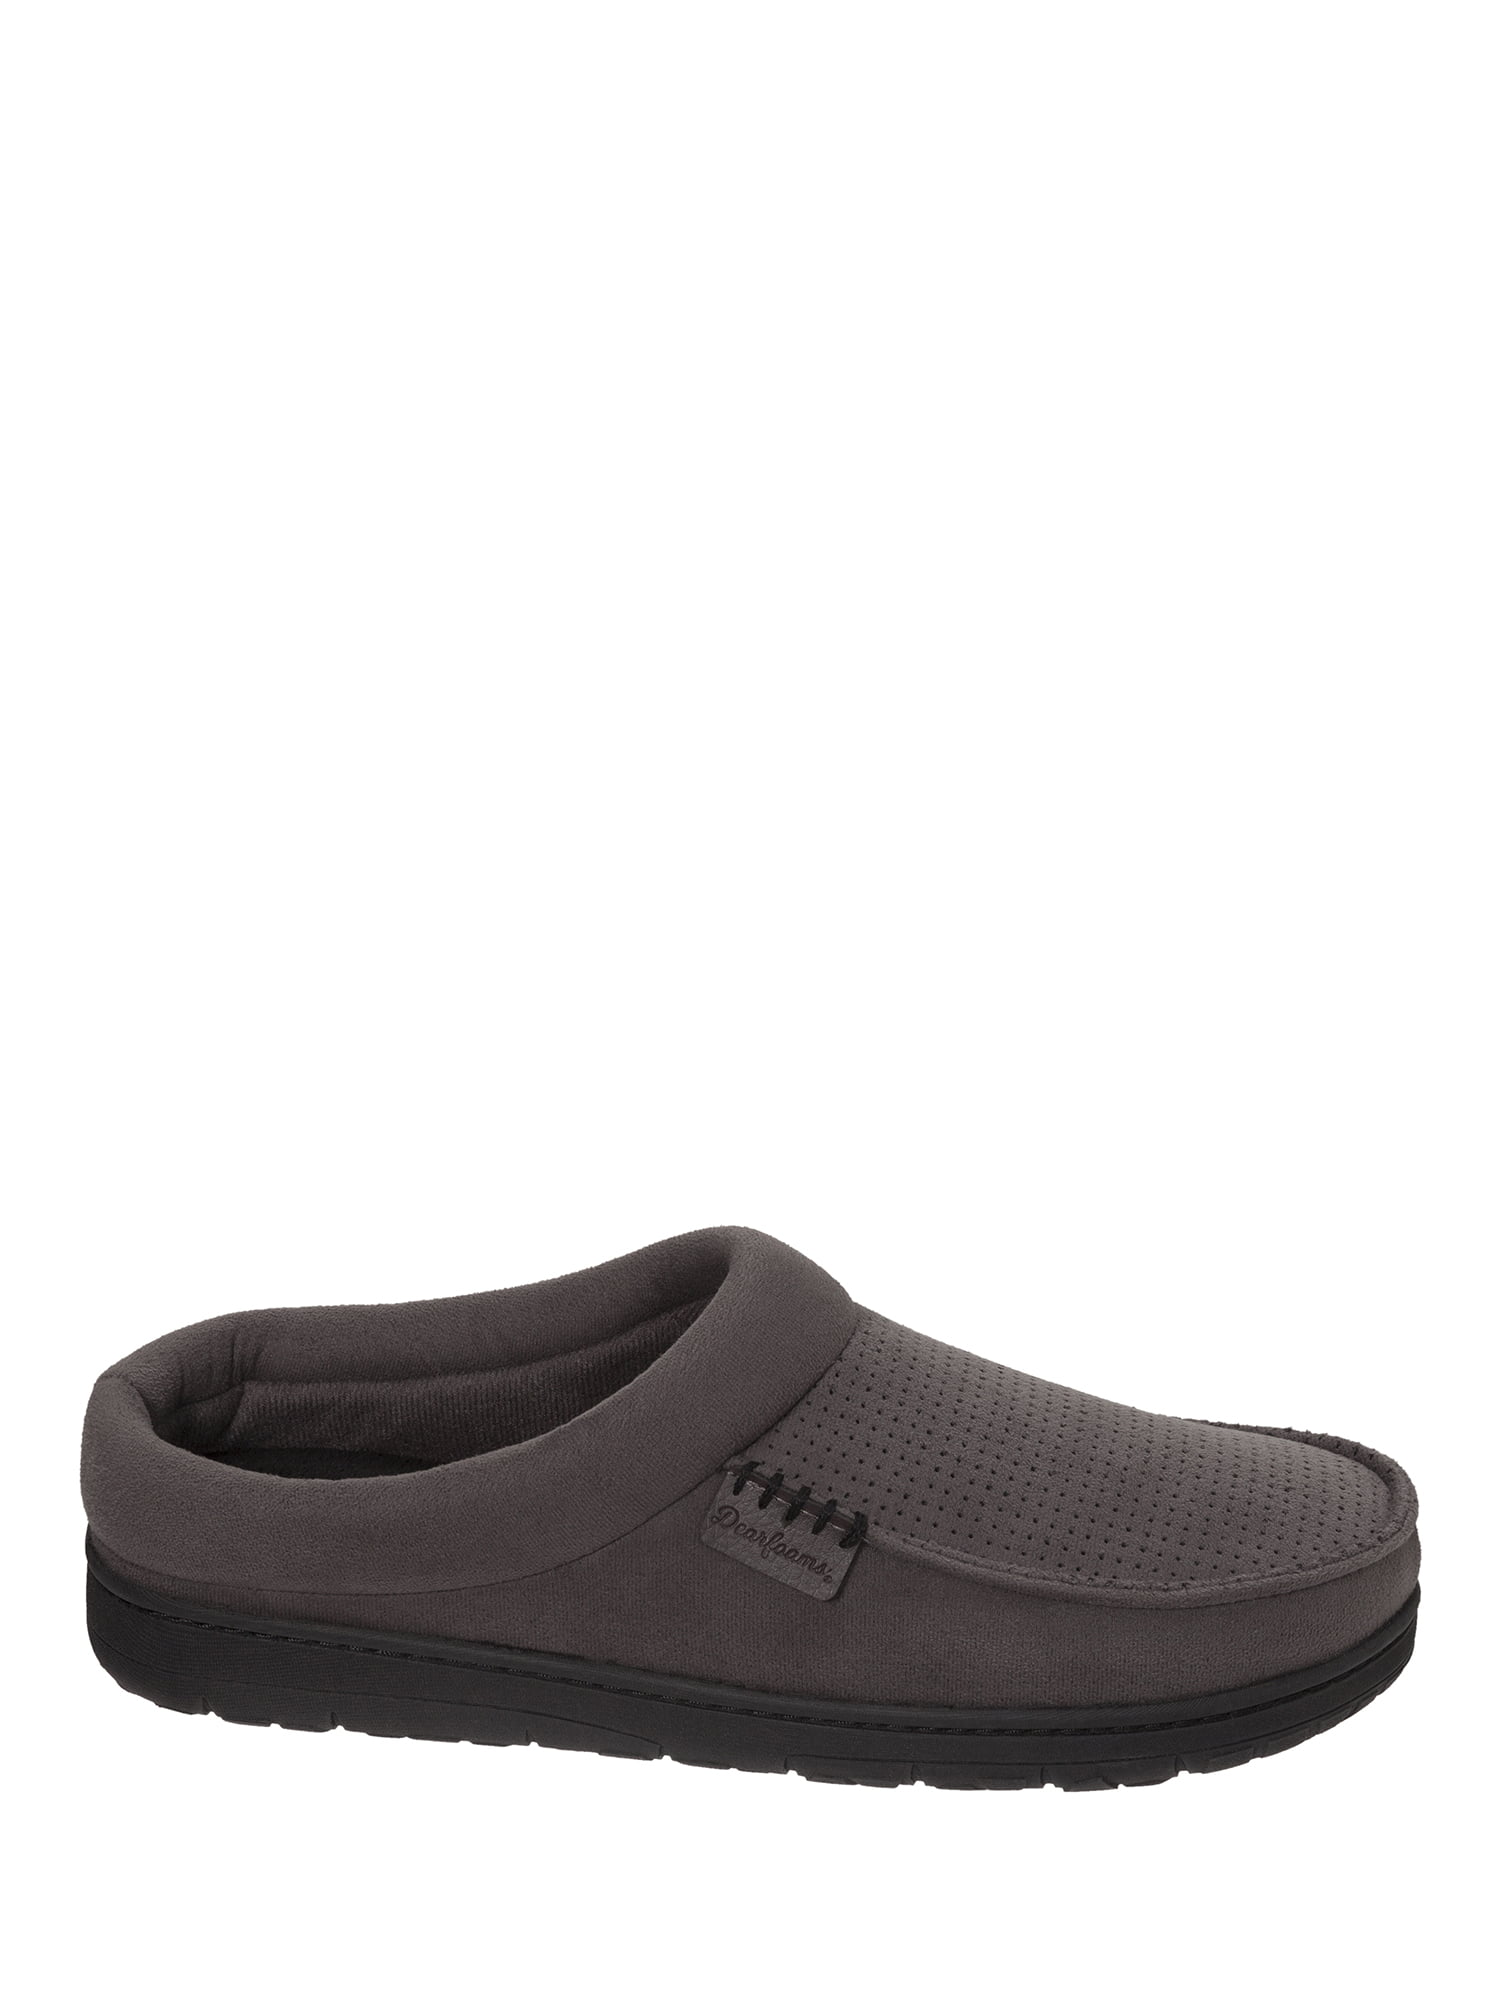 men's dearfoam wide width slippers